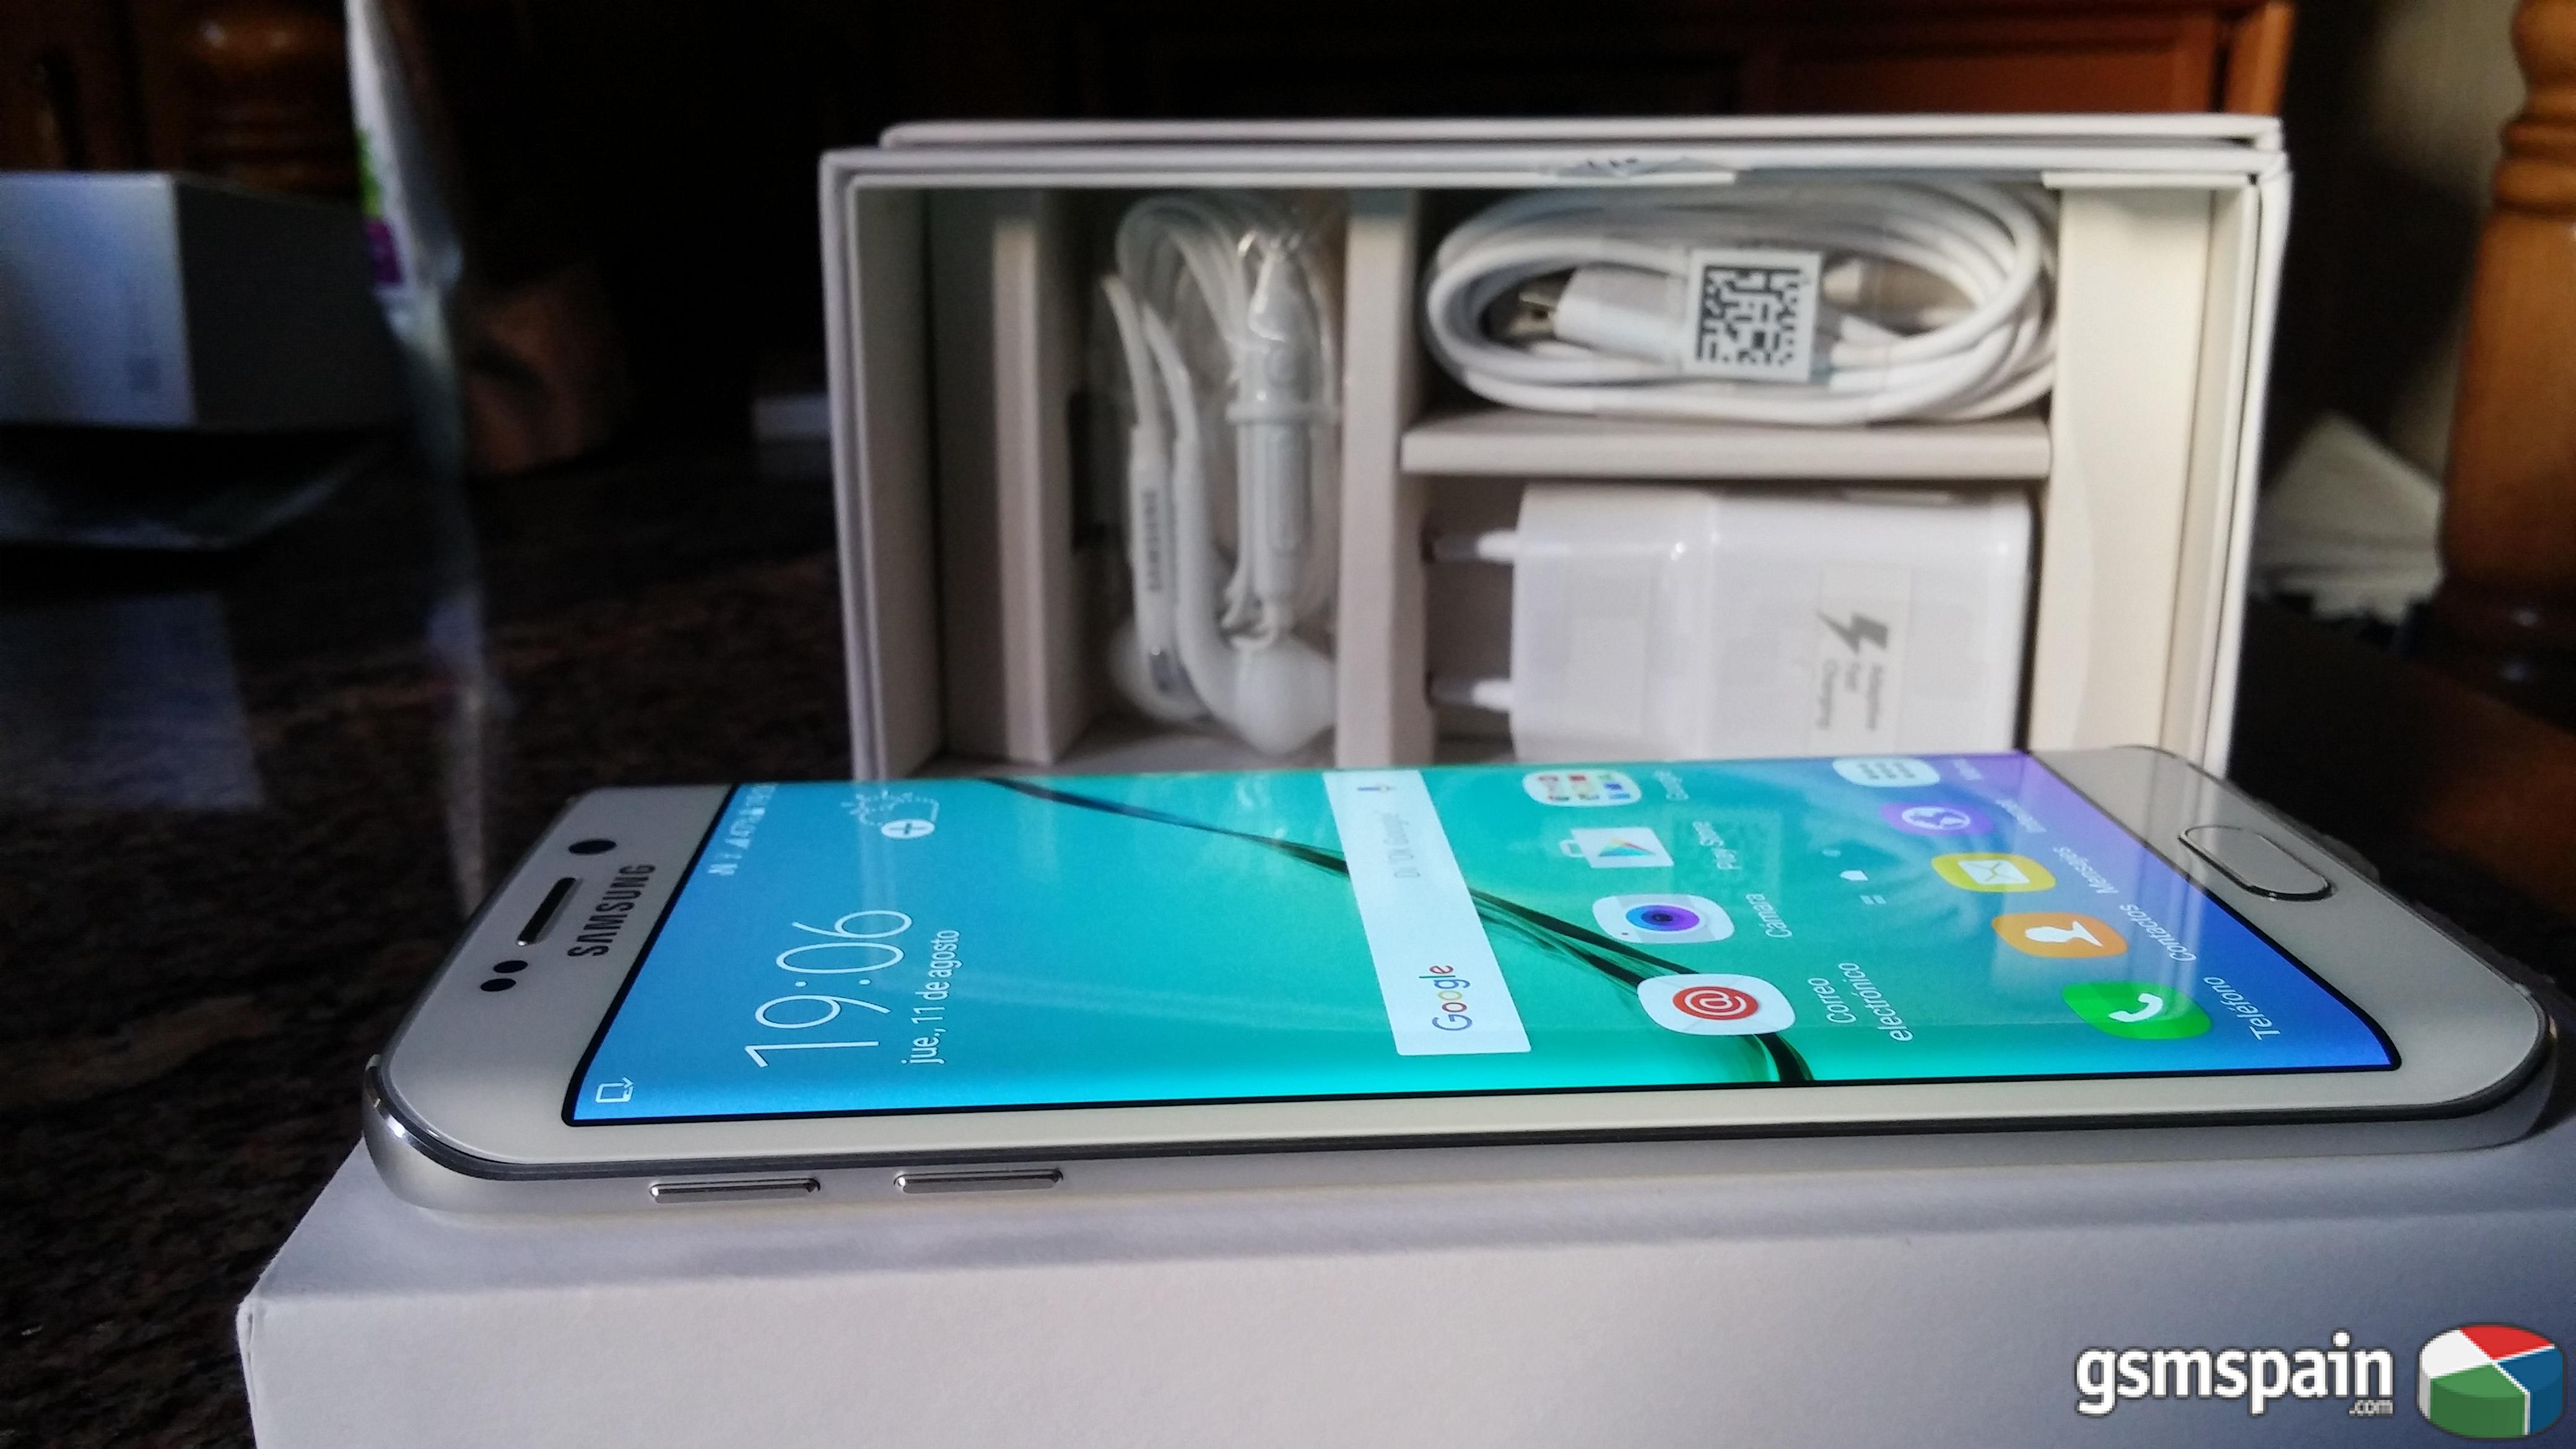 [CAMBIO] Mi Samsung Galaxy S6 Edge 64GB Blanco con factura por Galaxy S7 32GB